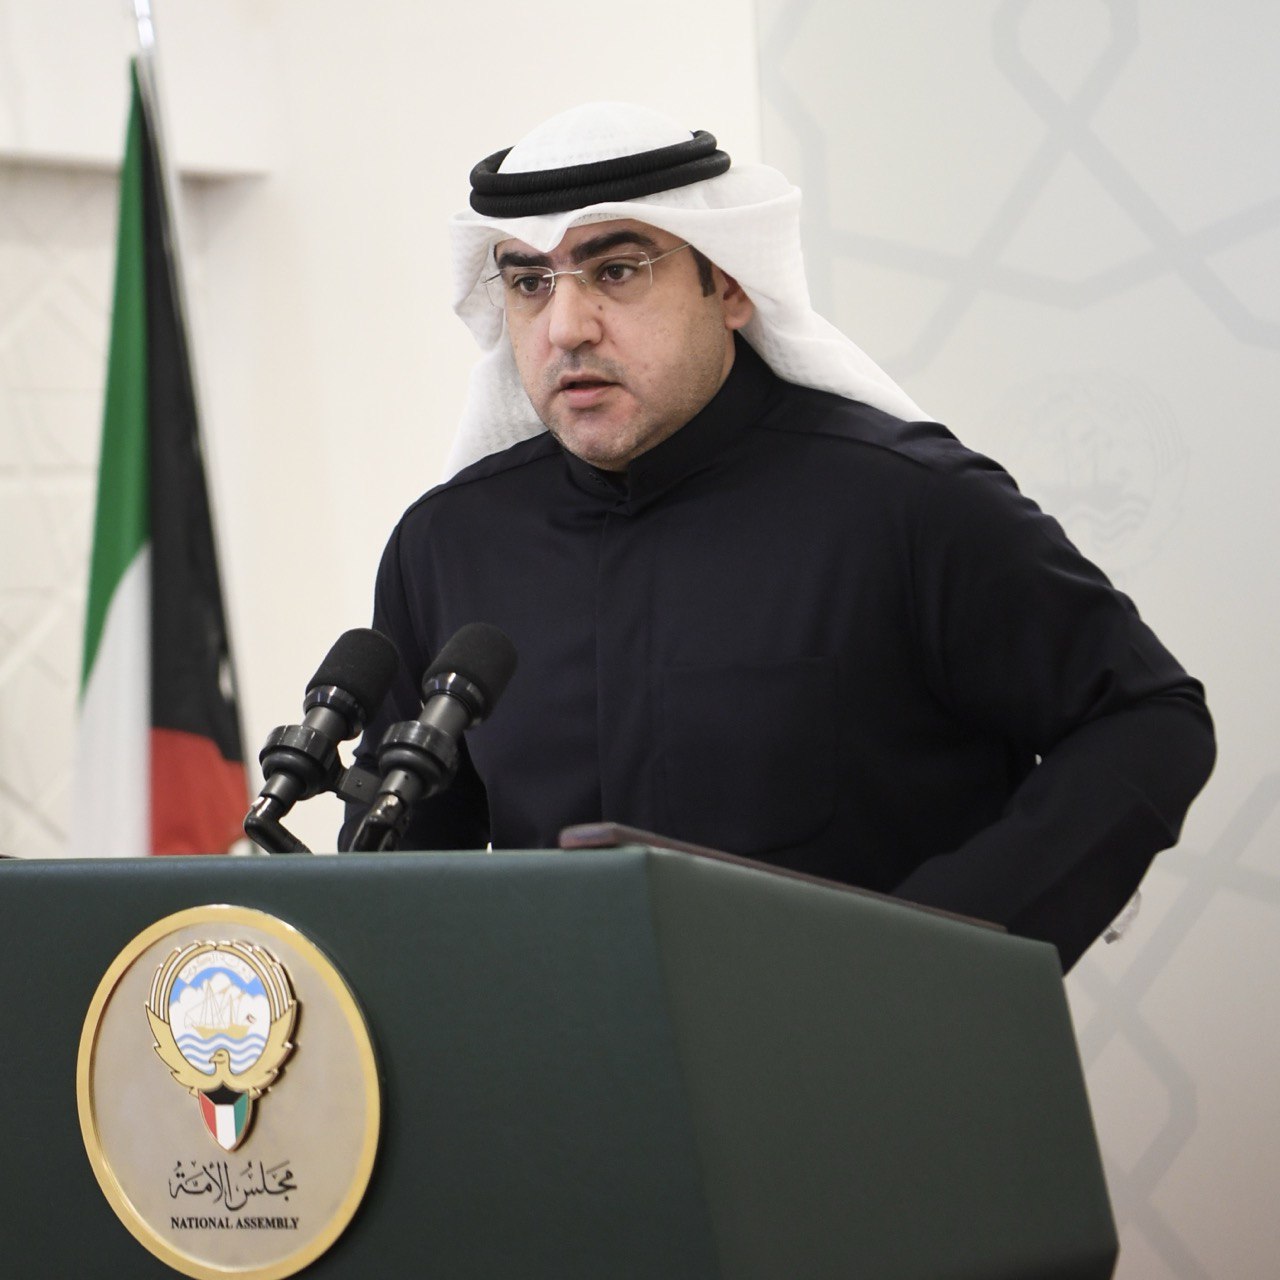 عبدالكريم الكندري: نأمل إعادة النظر في قرار وقف التعيين والترقية للتخفيف من معاناة المواطنين وأسرهم 